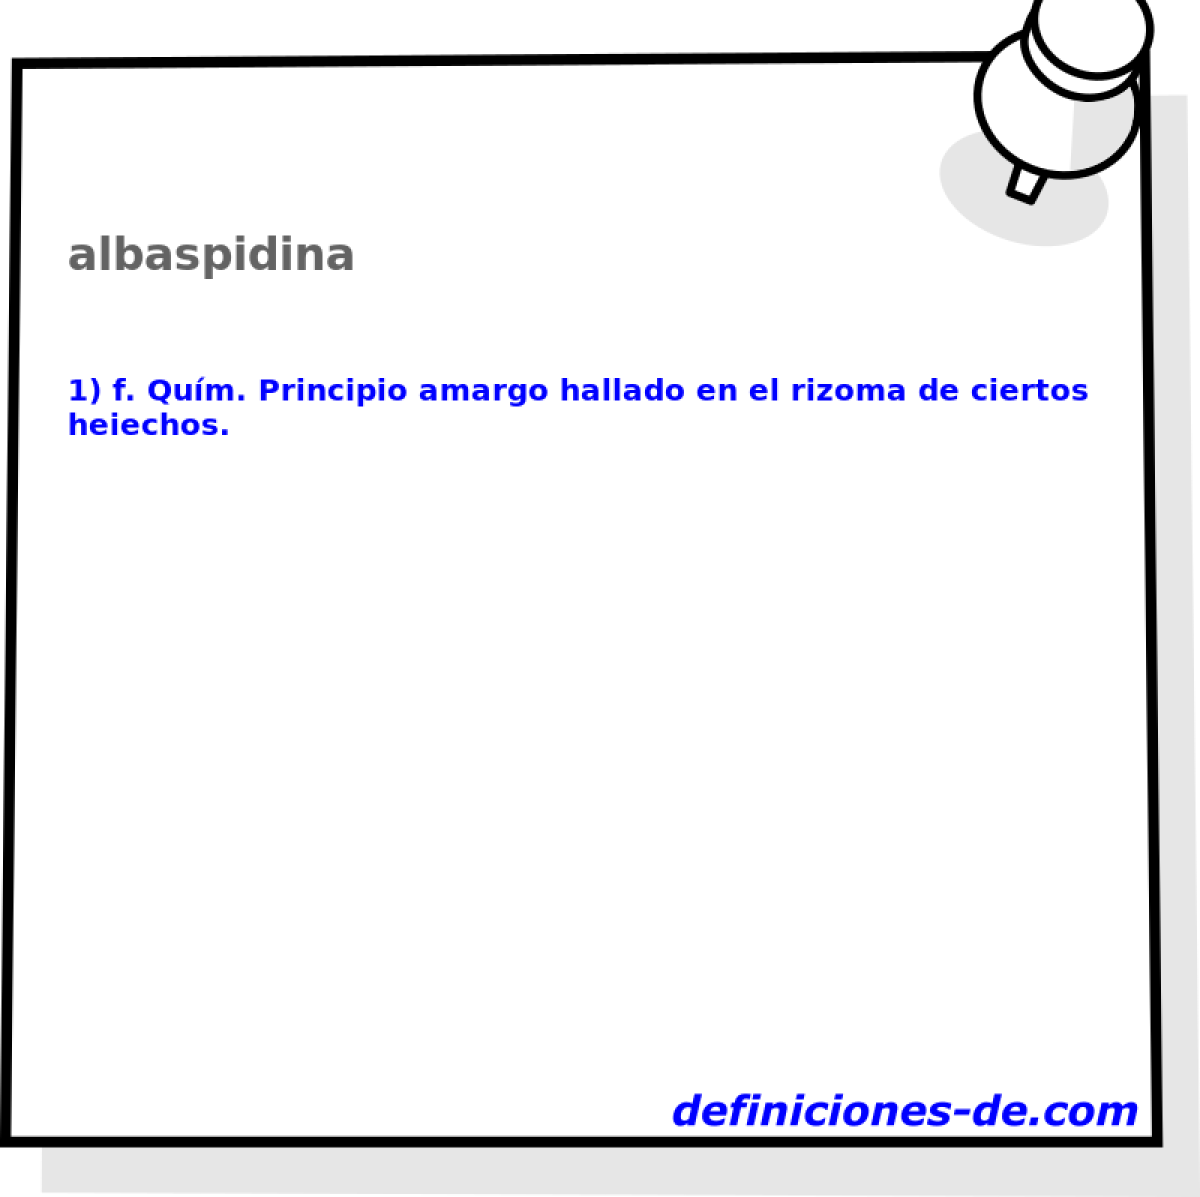 albaspidina 